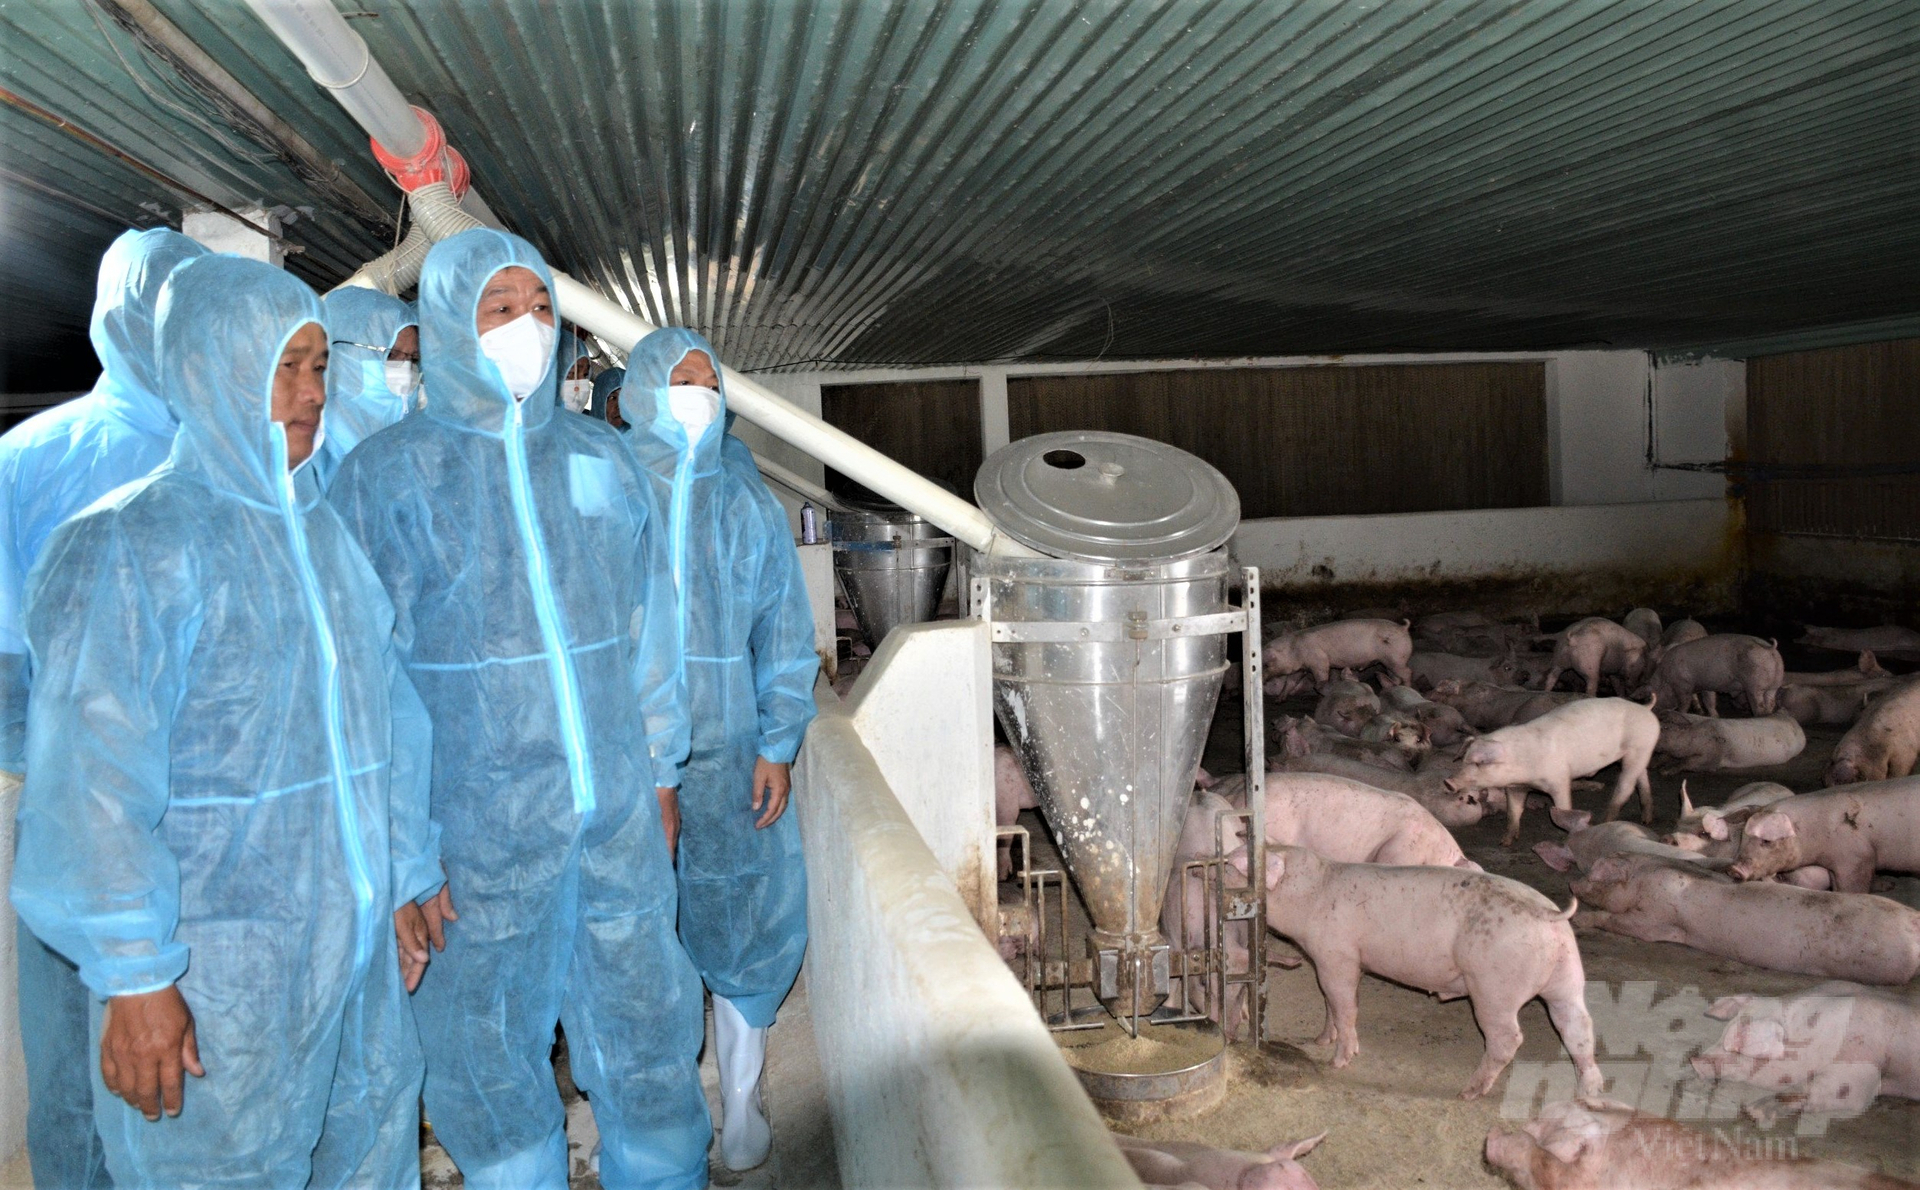  Lãnh đạo tỉnh Kiên Giang thăm trang trại chăn nuôi heo tập trung theo chuỗi khép kín tại huyện Giang Thành. Ảnh: Trung Chánh.